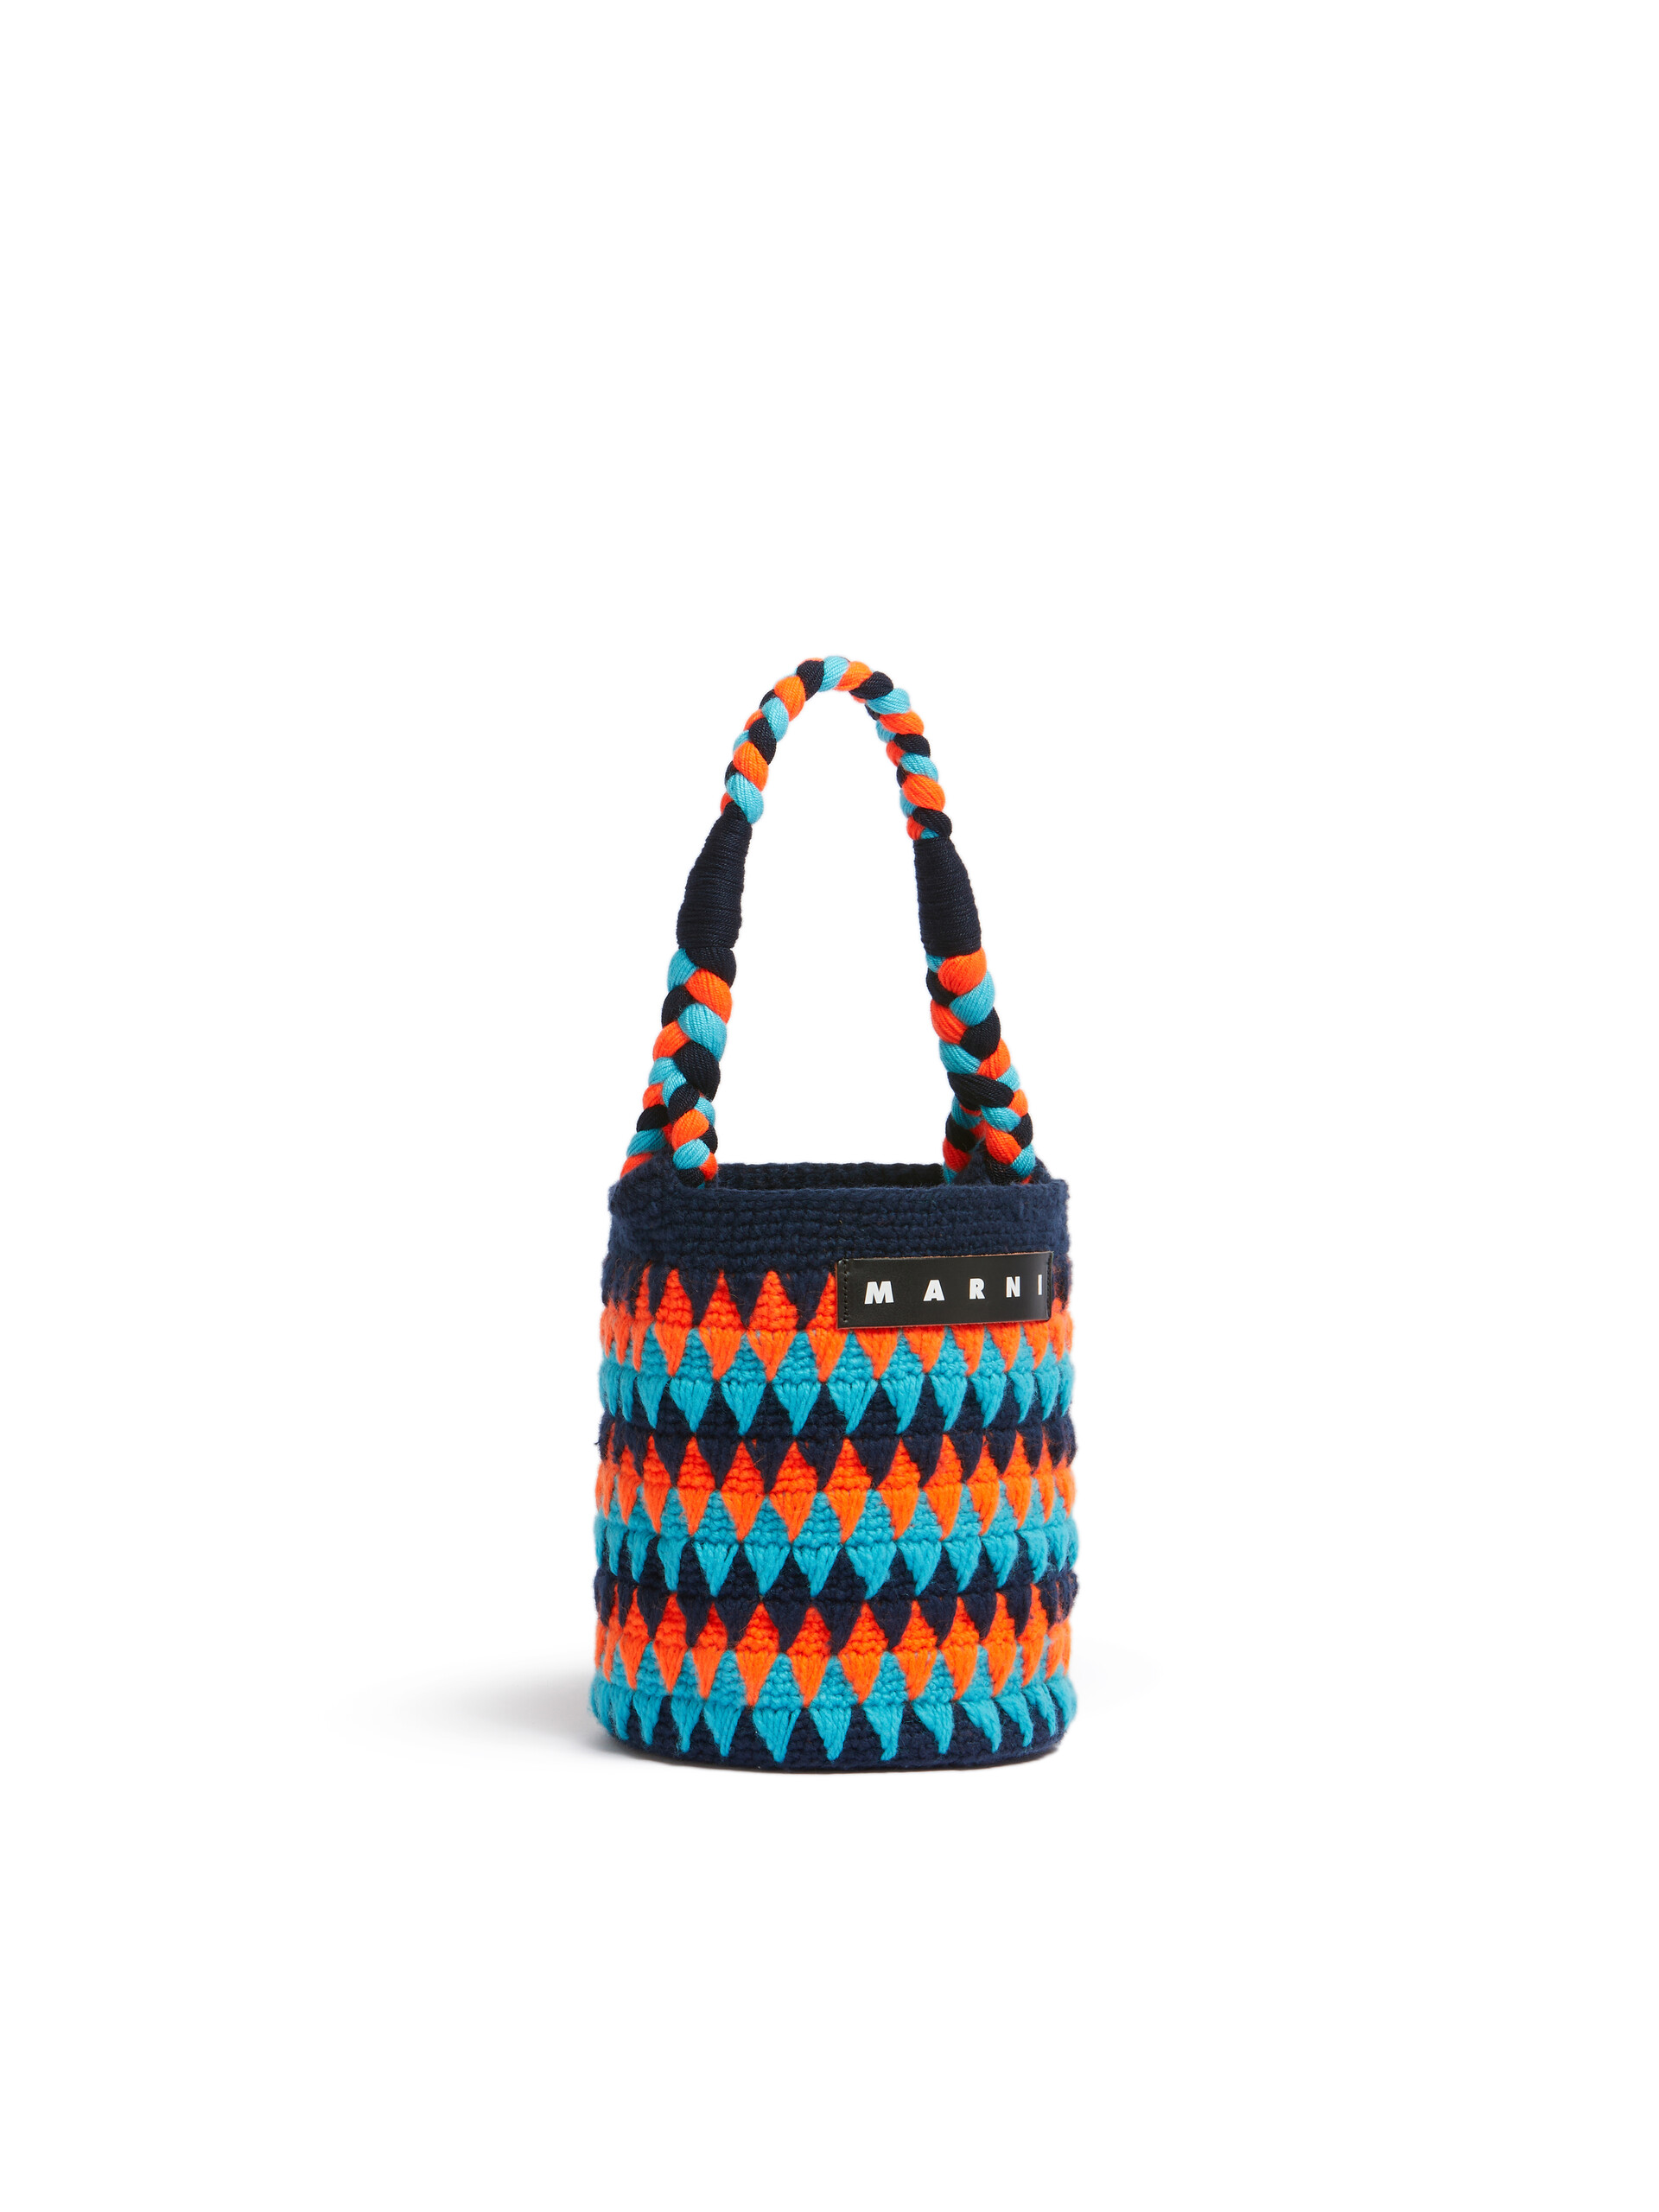 Sac Marni Market Chessboard orange et bleu réalisé au crochet - Sacs cabas - Image 2